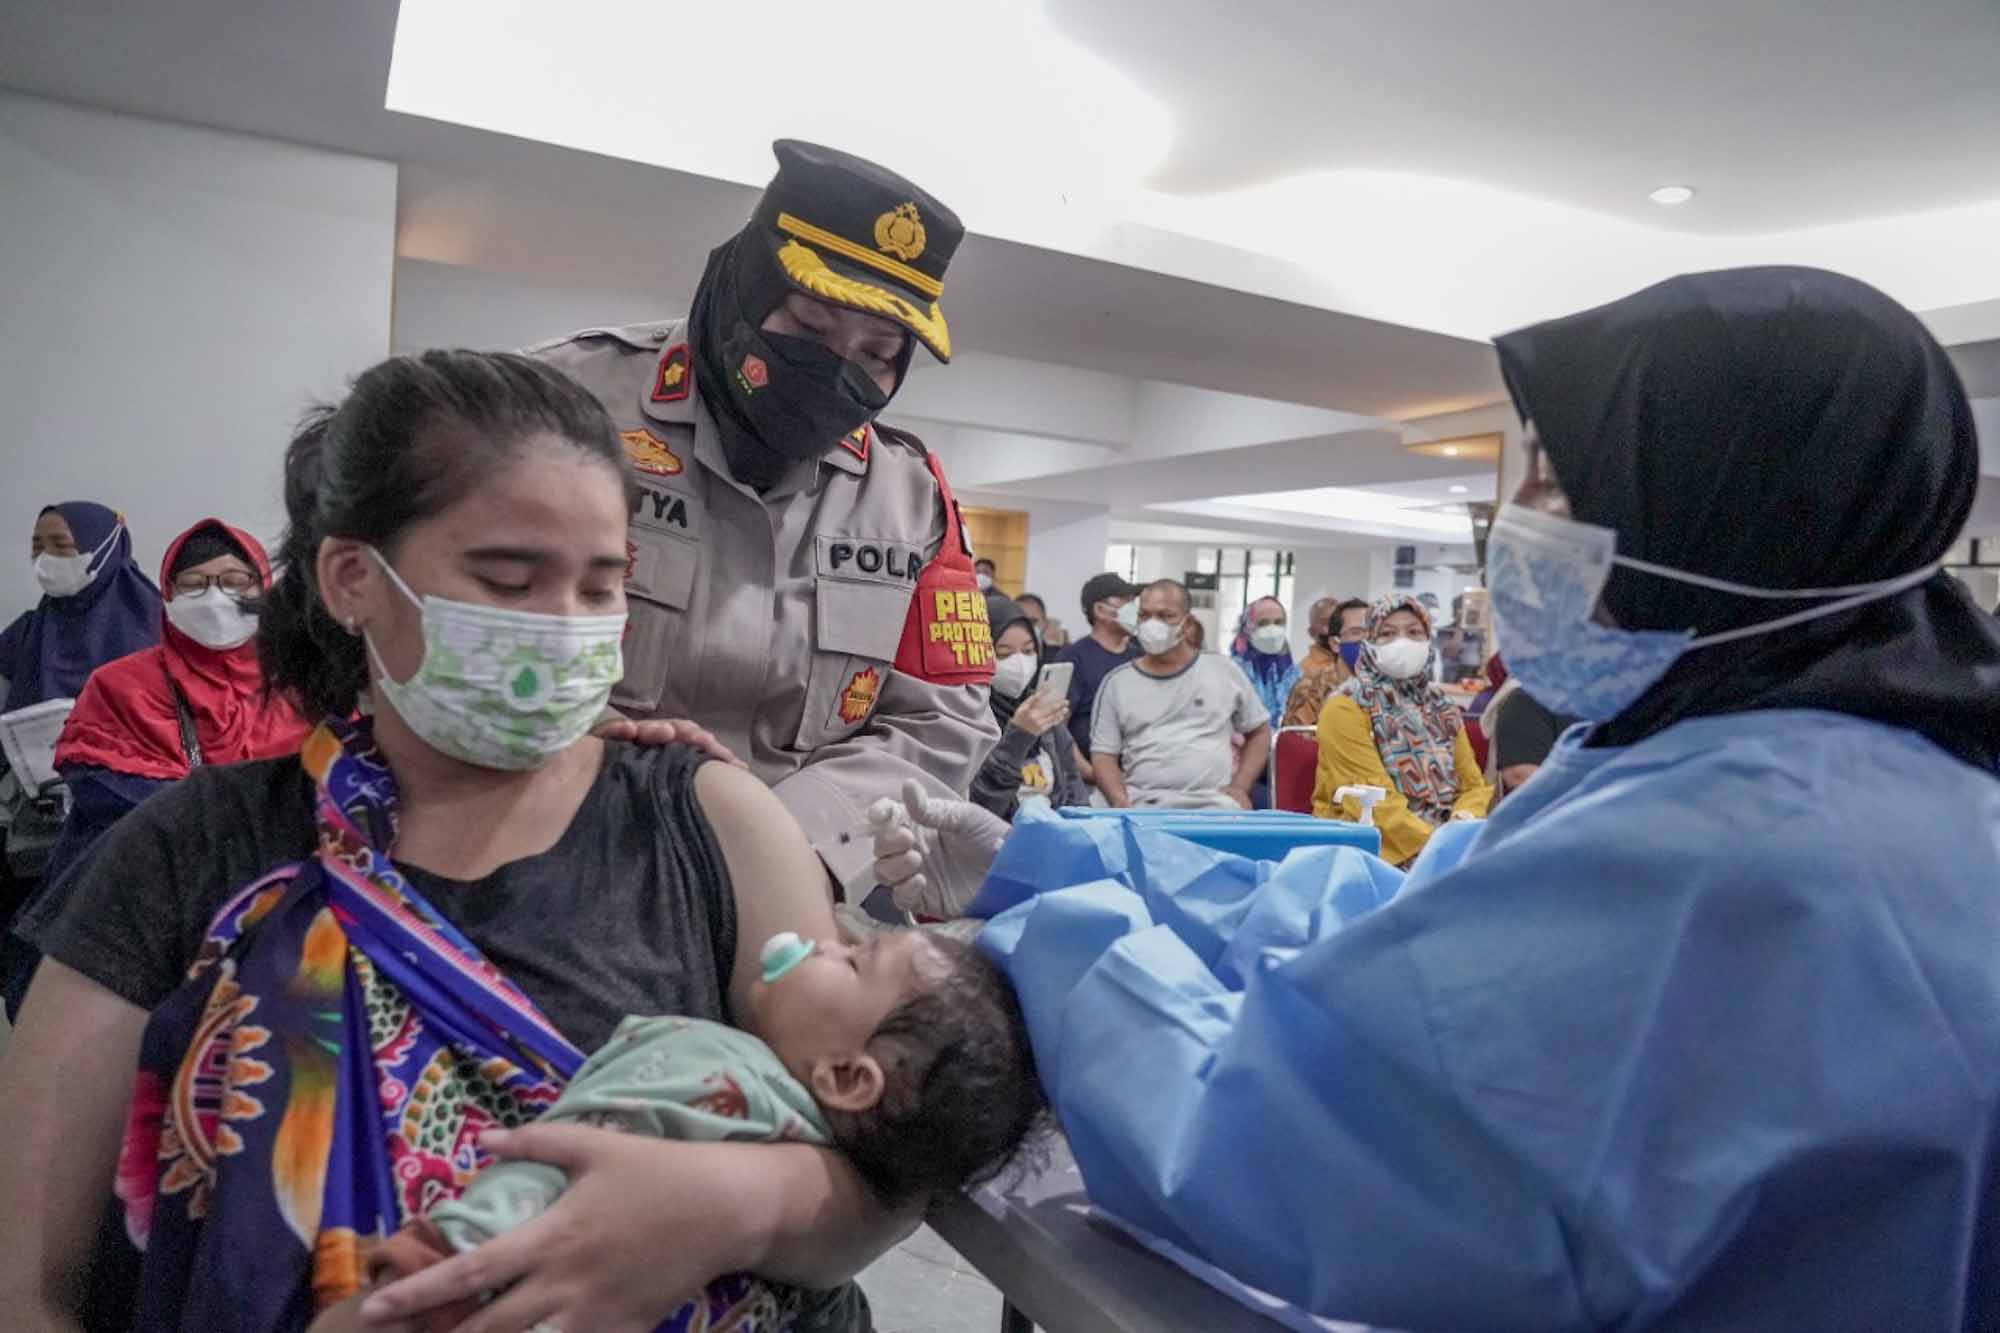 Mau ke Mall Tapi Belum Vaksin Booster? Jangan Panik, Ada Gerai Vaksinasi di Mall Bekasi